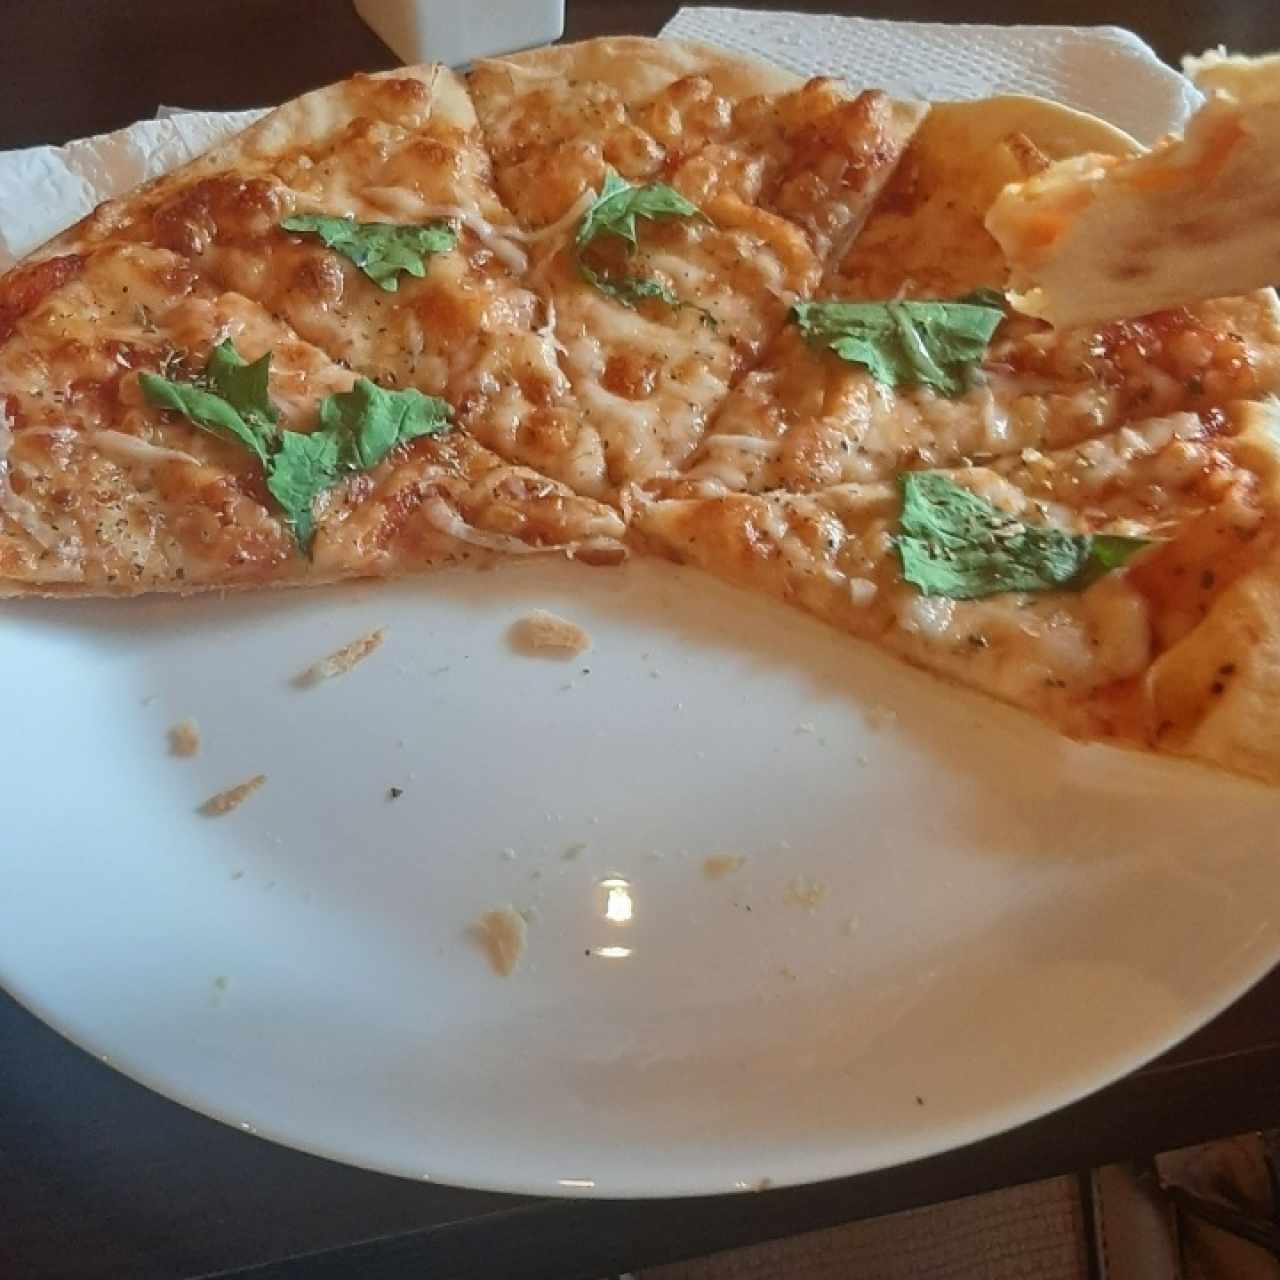 Pizza margarita